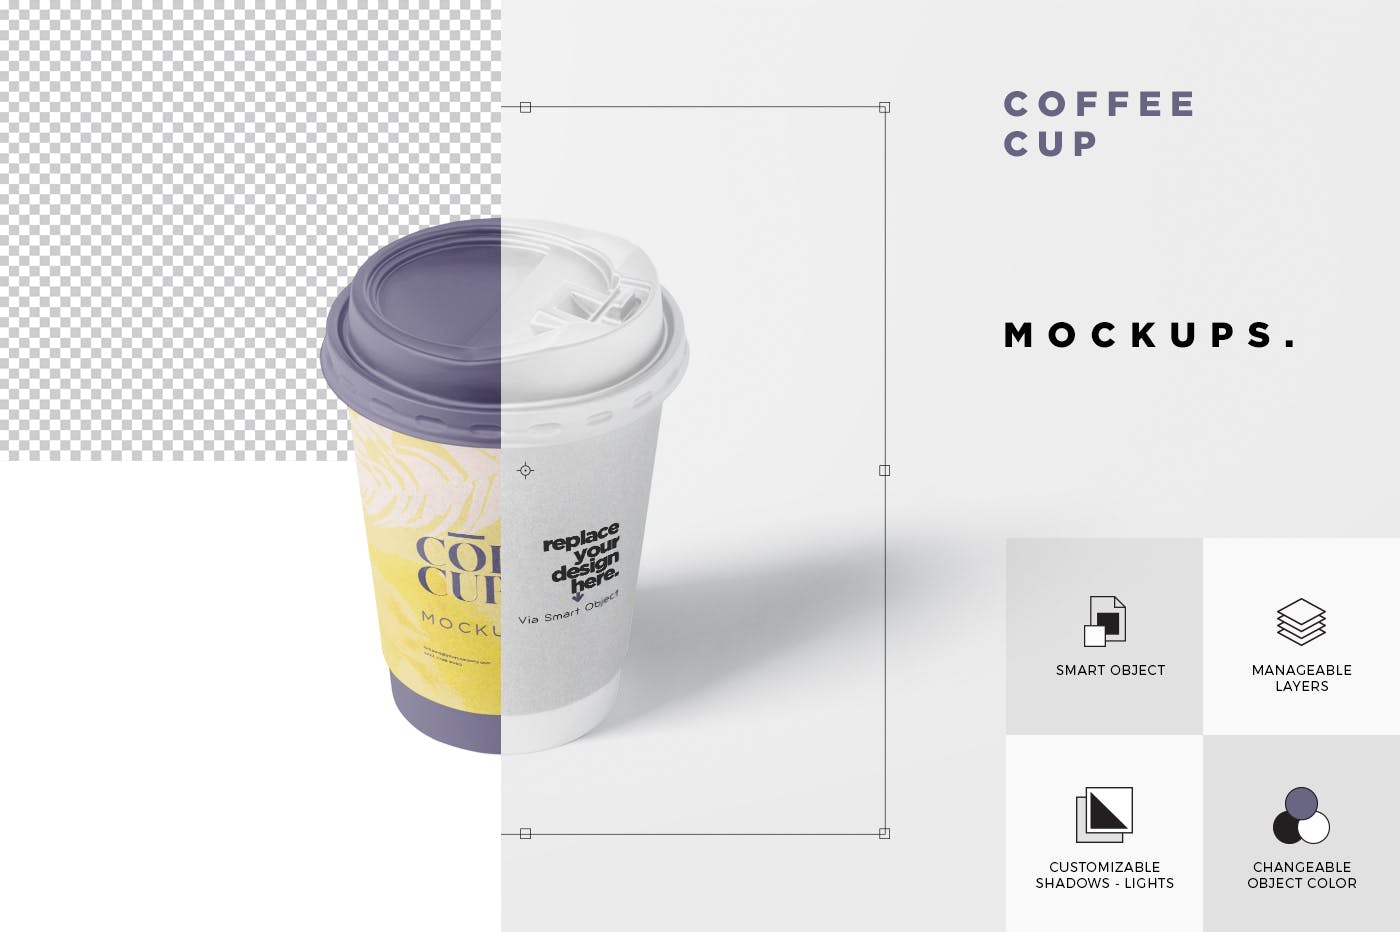 咖啡一次性纸杯设计效果图第一素材精选 Coffee Cup Mockup插图(7)